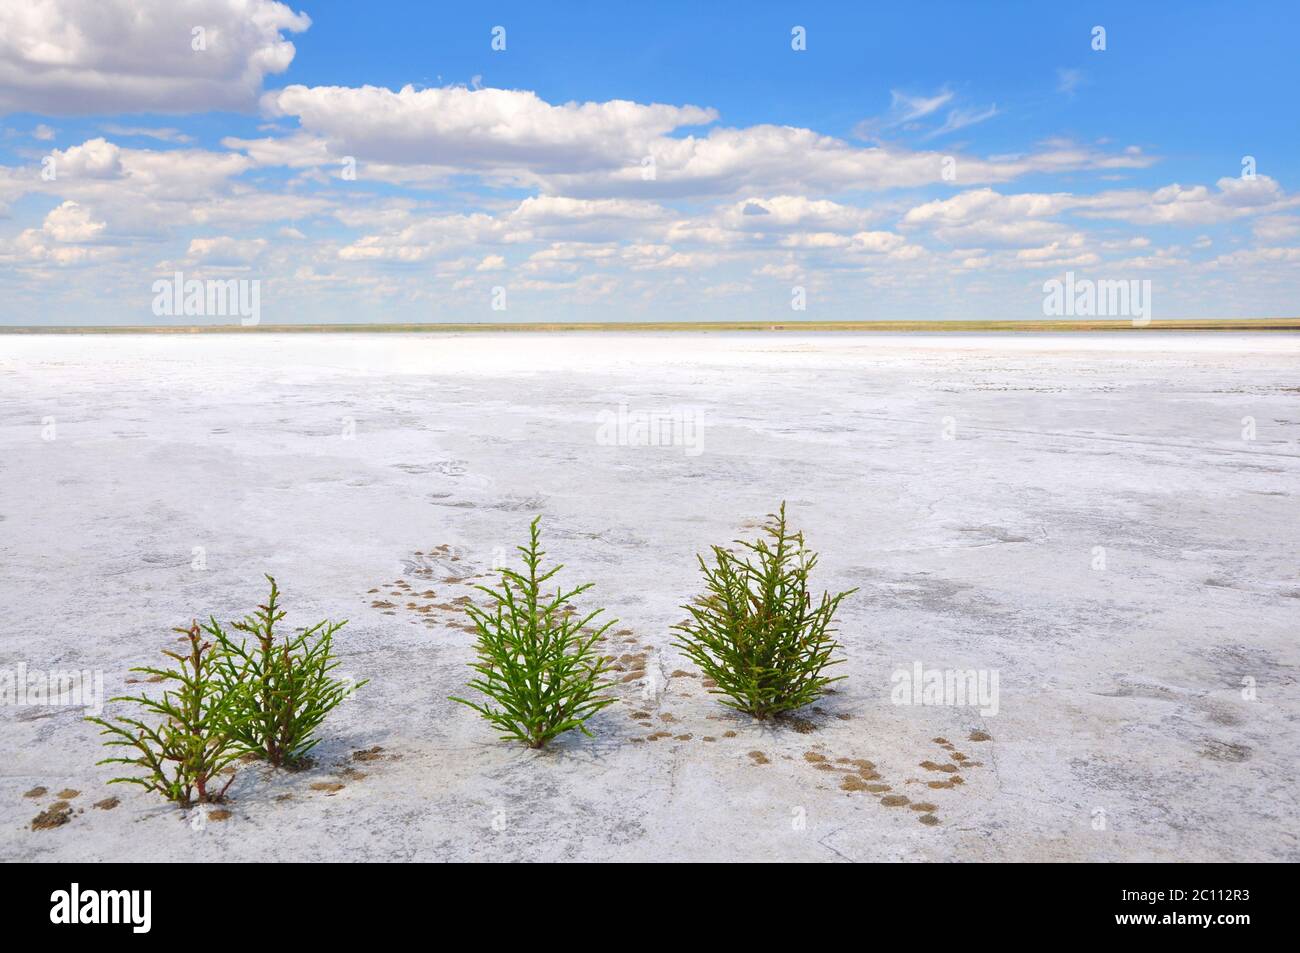 Grüne Pflanzen wachsen auf dem weißen Salzboden des Sees Elton, der größte Salzsee in Europa, erstaunliche Natur von Russland, Wolgograd Oblast Stockfoto